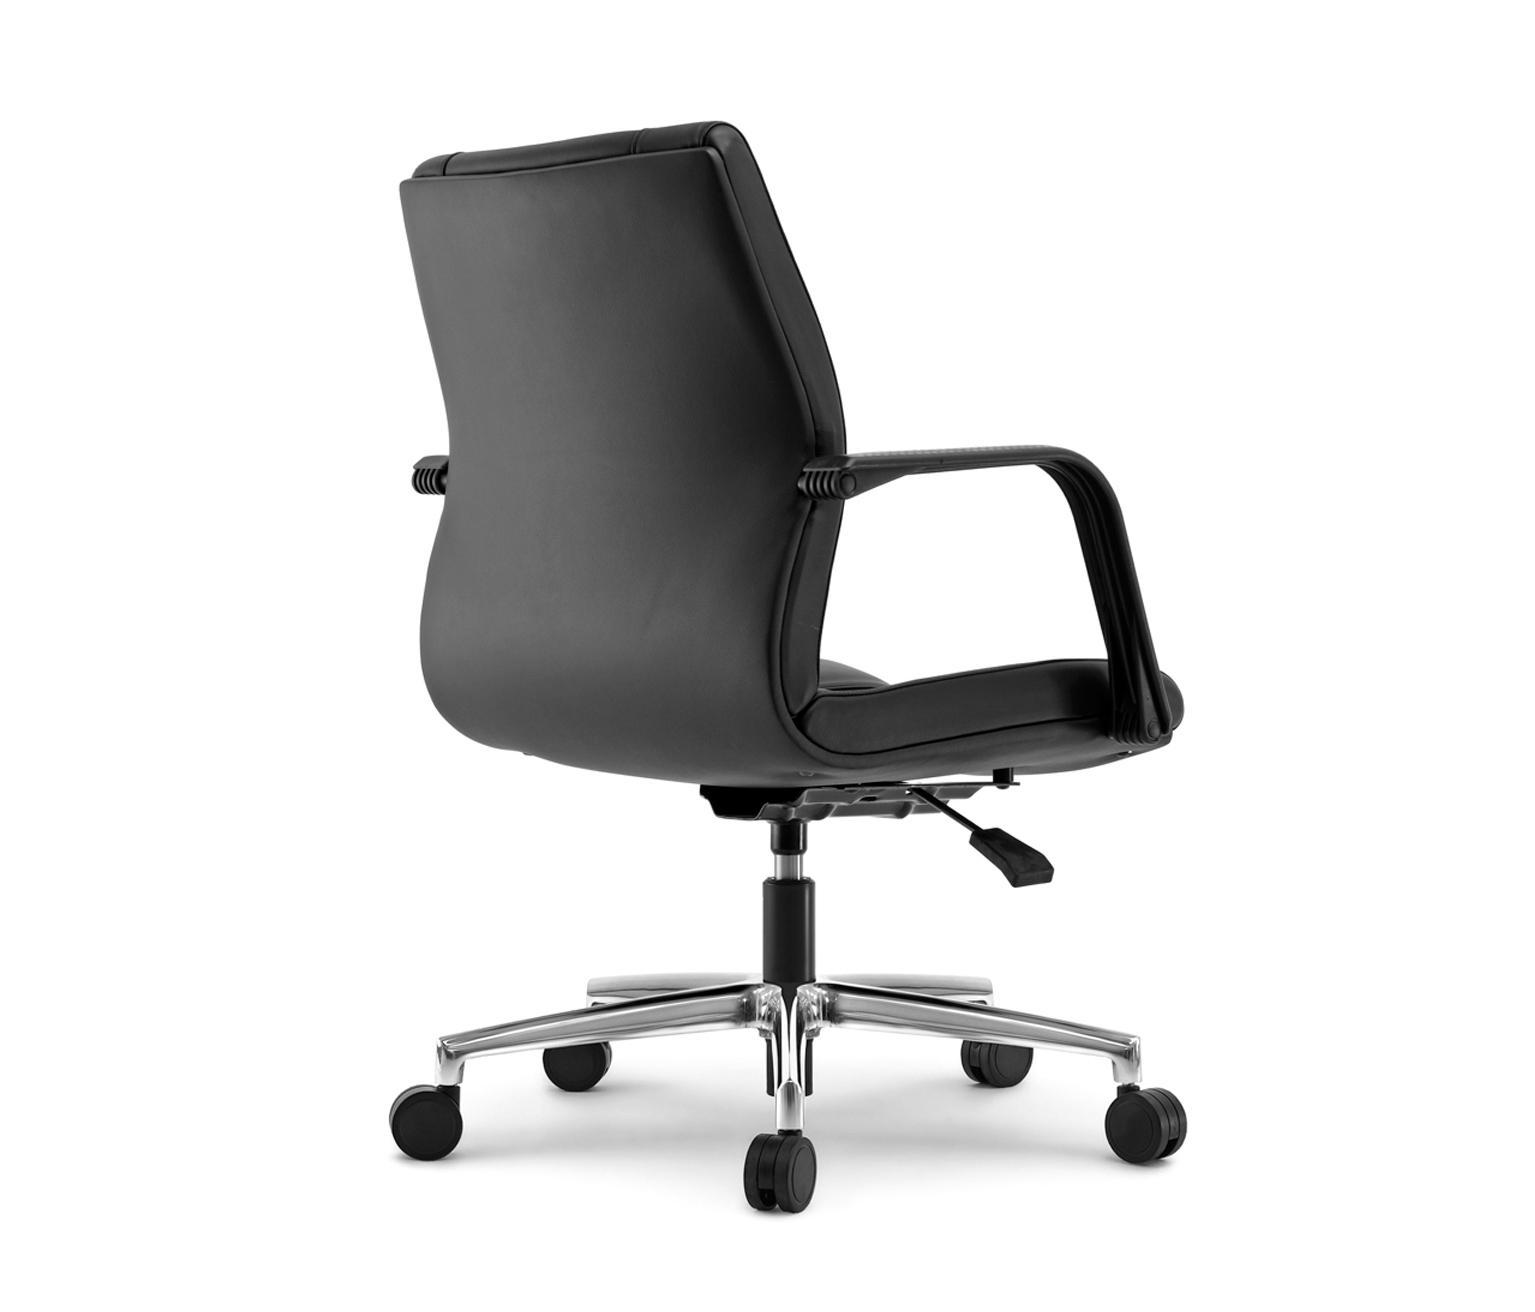 Офисное кресло m5. NURUS Mia кресло. Chairman m268. Кресло m3. Инновационное кресло MPOSITION.